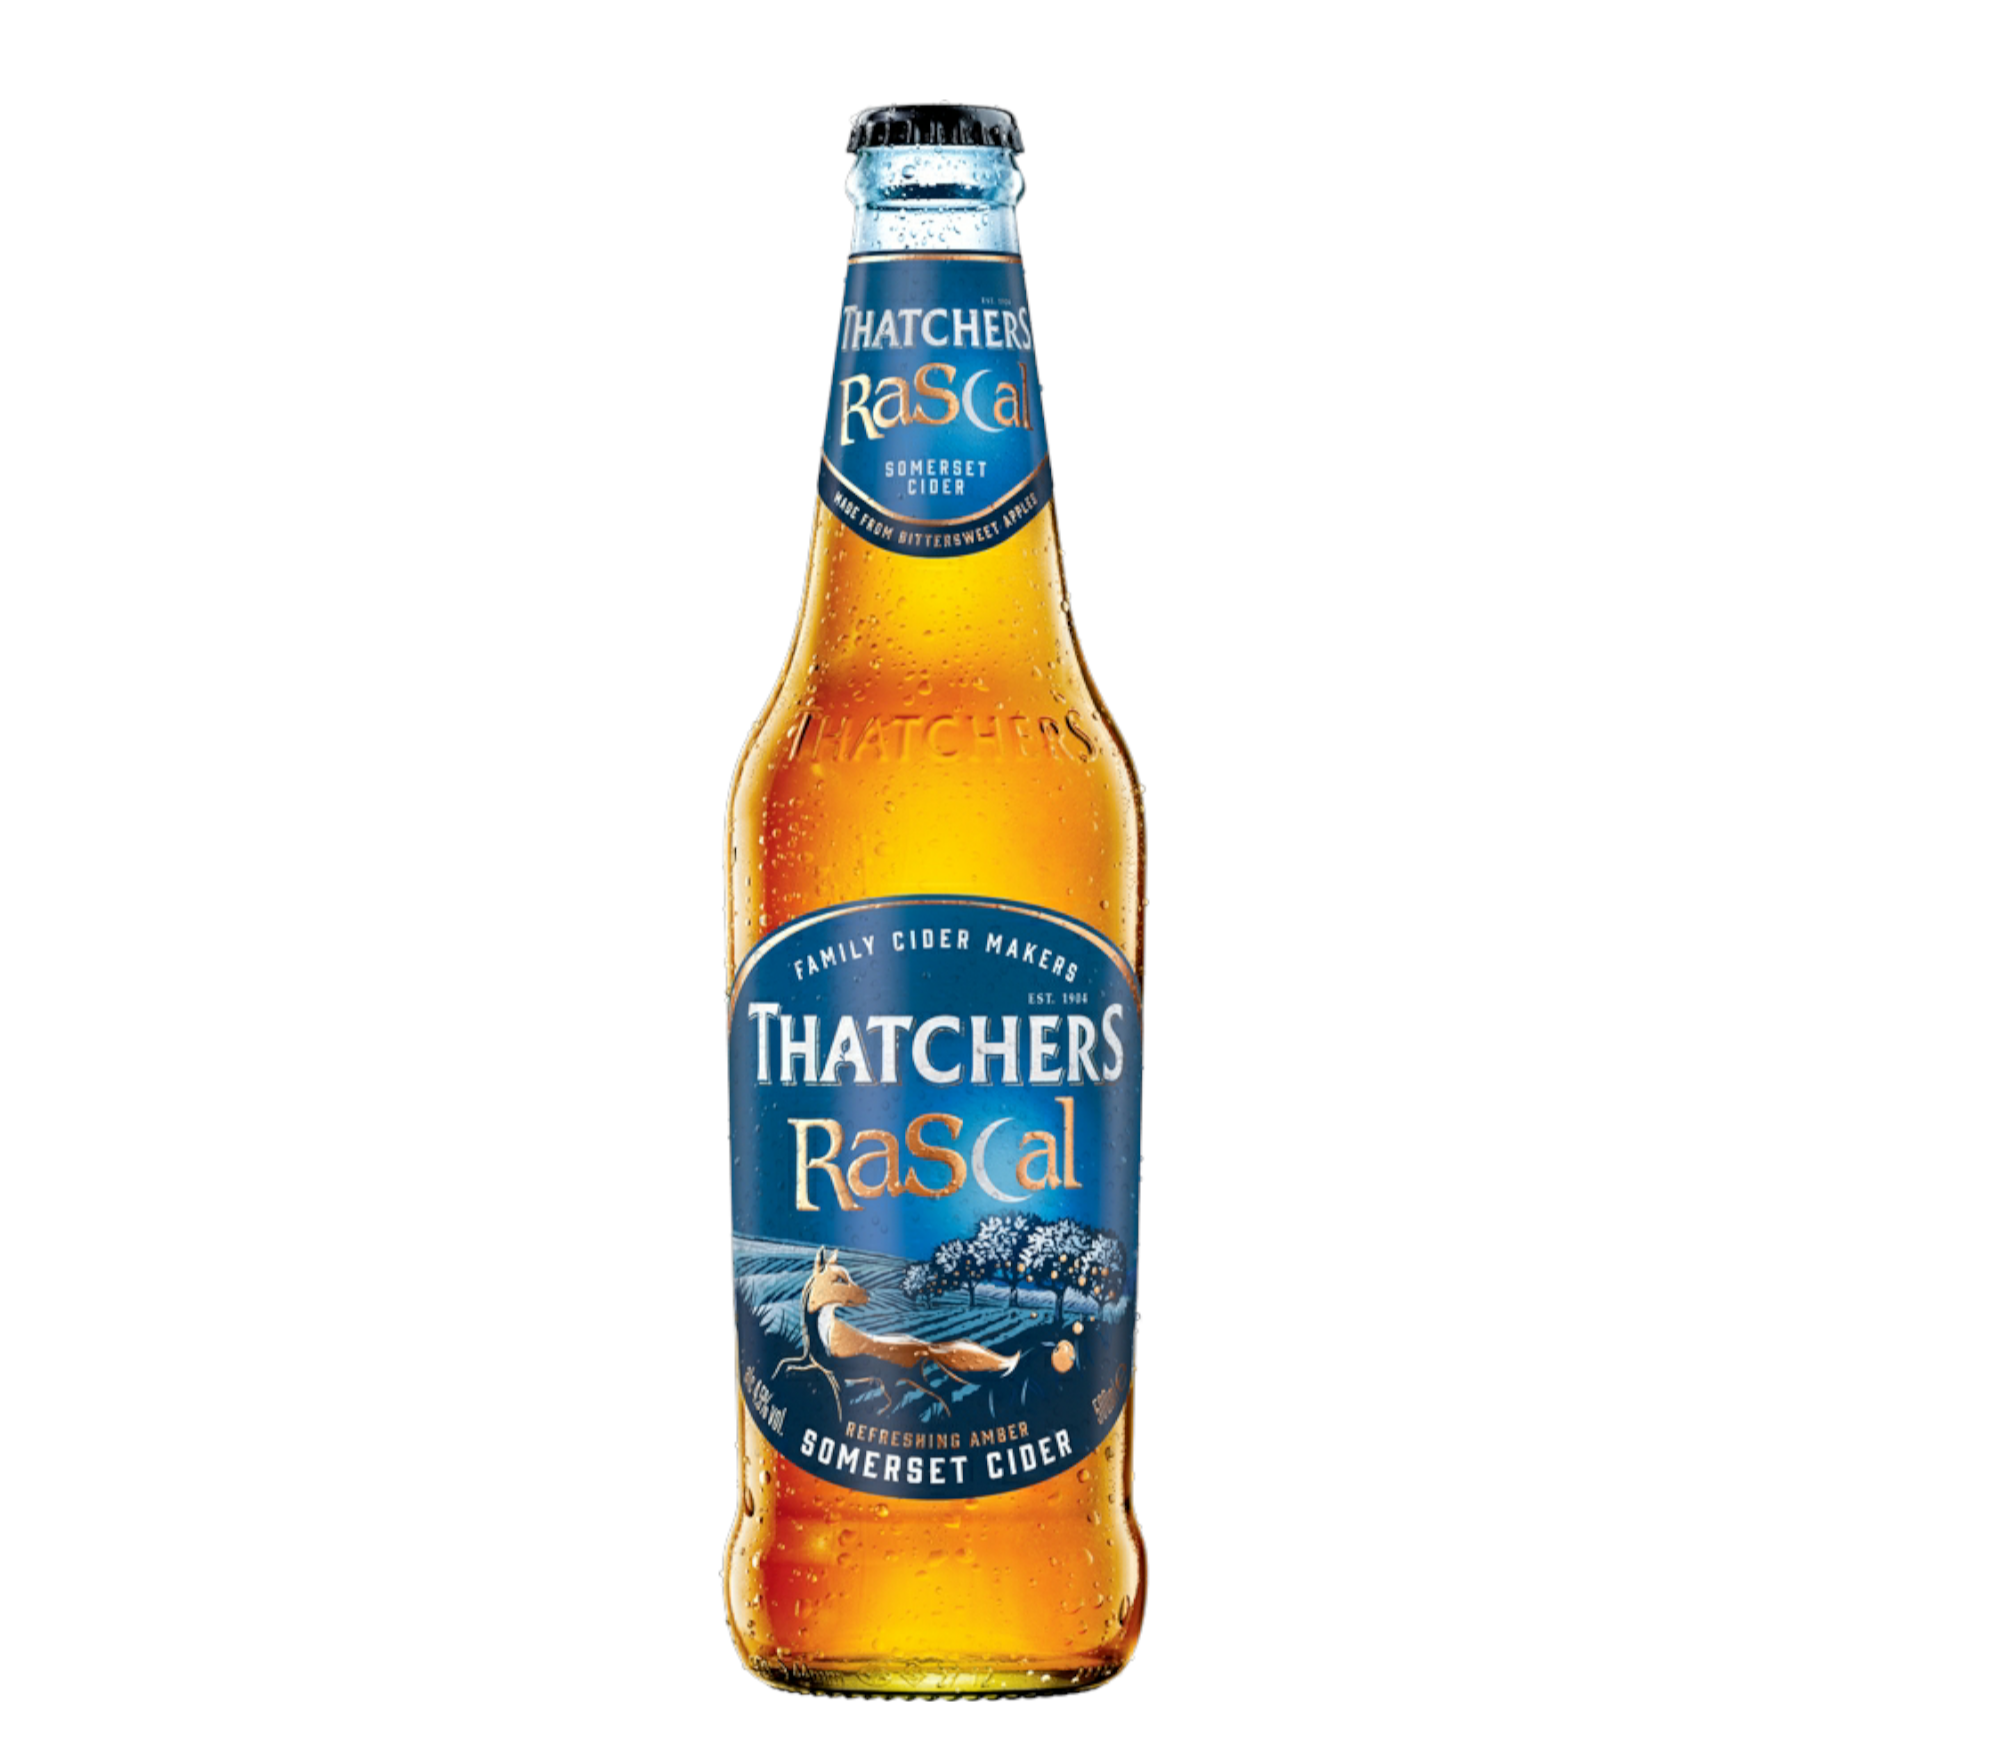 Thatchers Rascal 0,5l- Refreshing Amber Somerset Cider mit 4,5% Vol. - Apfelwein aus Großbritannien